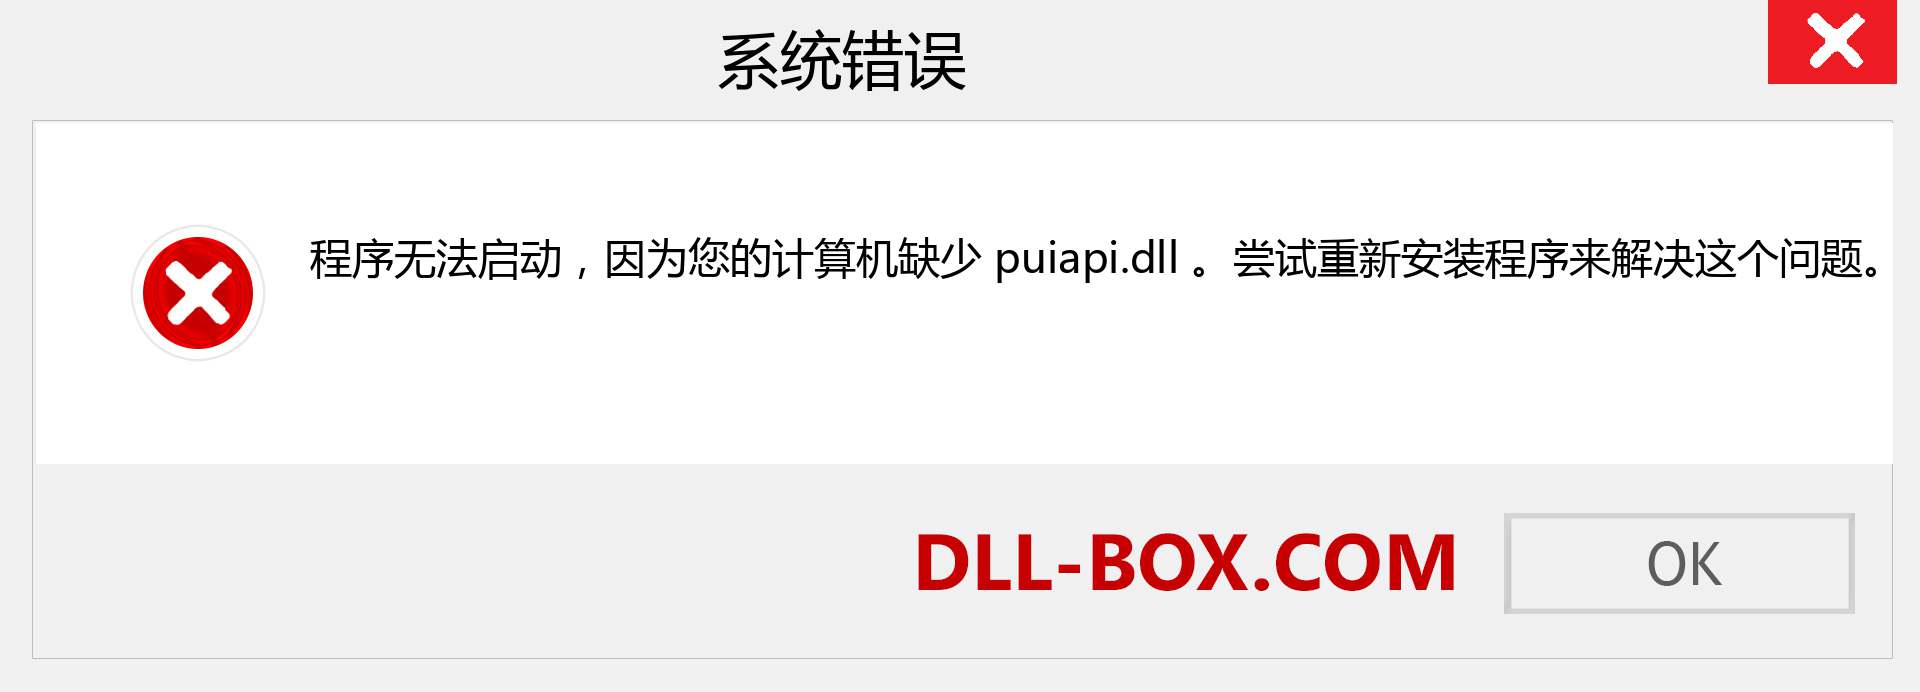 puiapi.dll 文件丢失？。 适用于 Windows 7、8、10 的下载 - 修复 Windows、照片、图像上的 puiapi dll 丢失错误